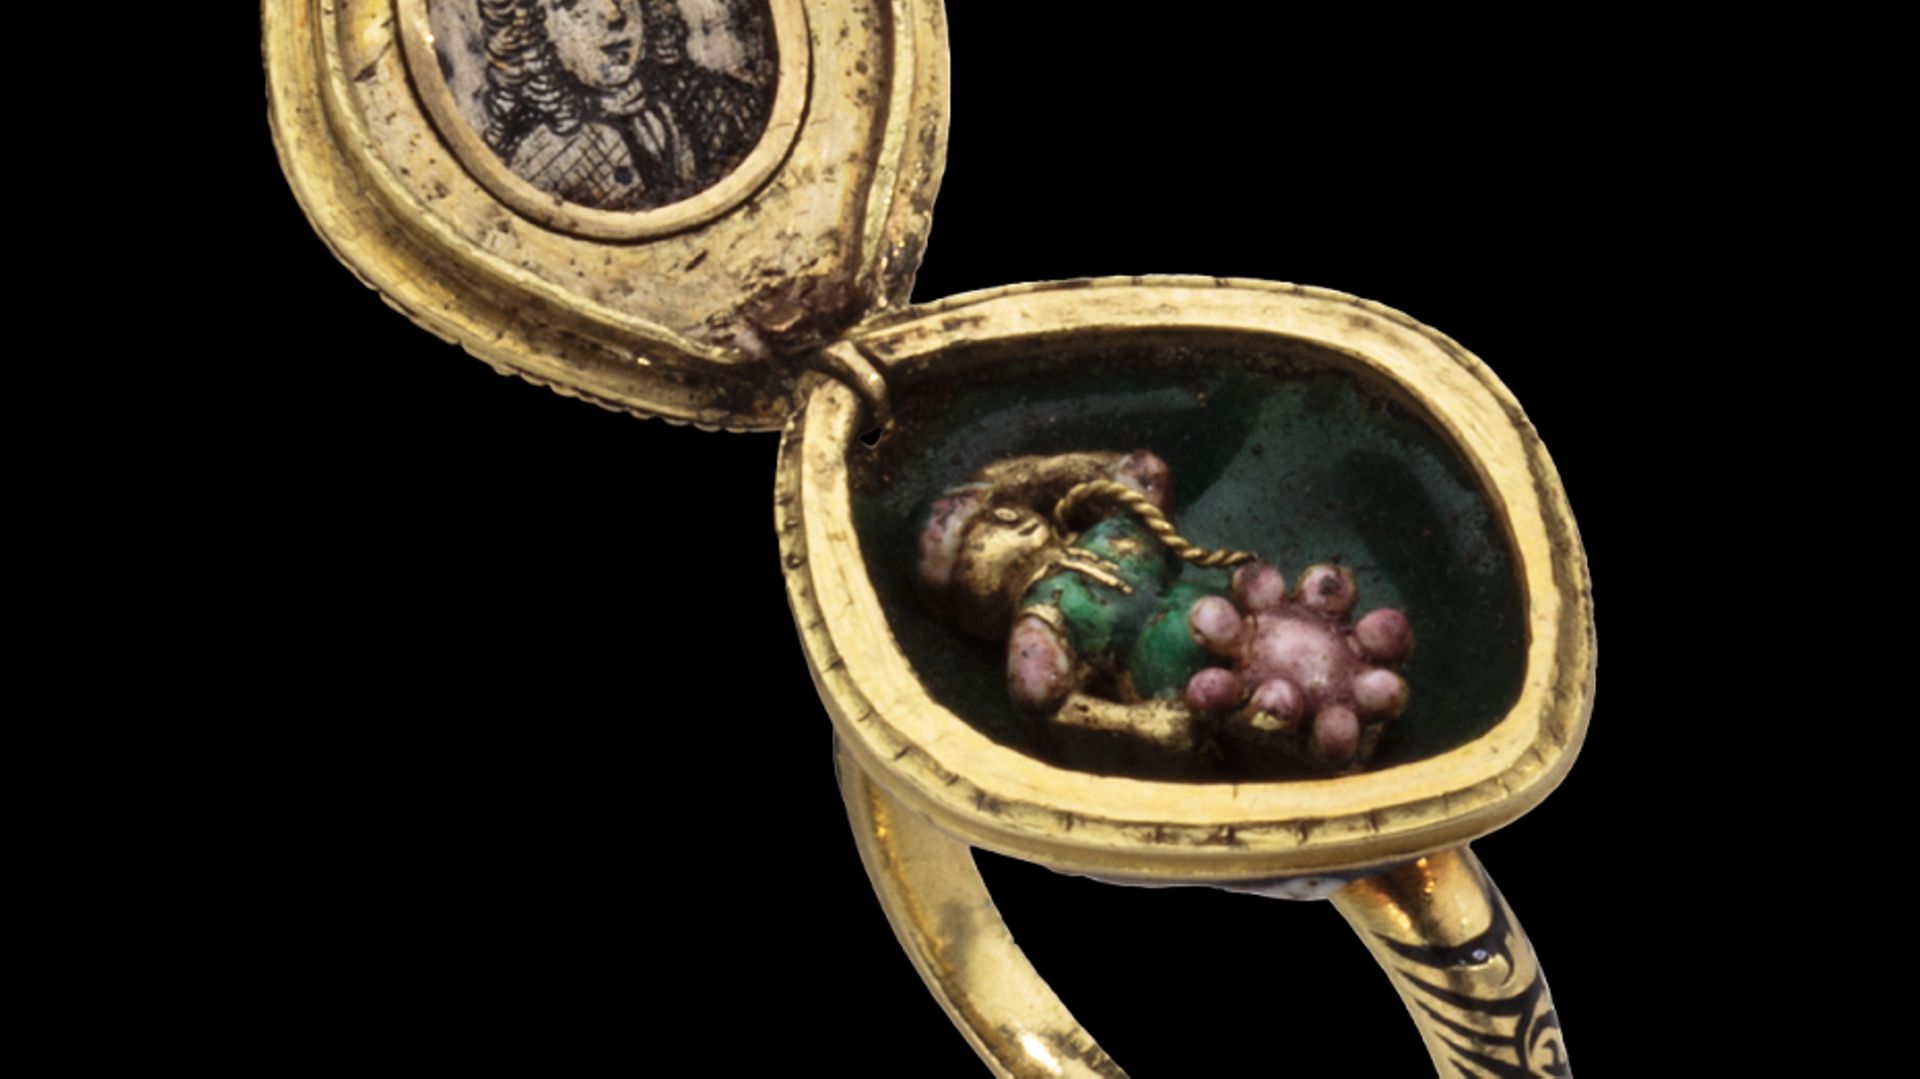 Bague rosace ornée de diamants avec médaillon acquise par la Fondation Roi Baudouin, qui sera exposé au Musée DIVA